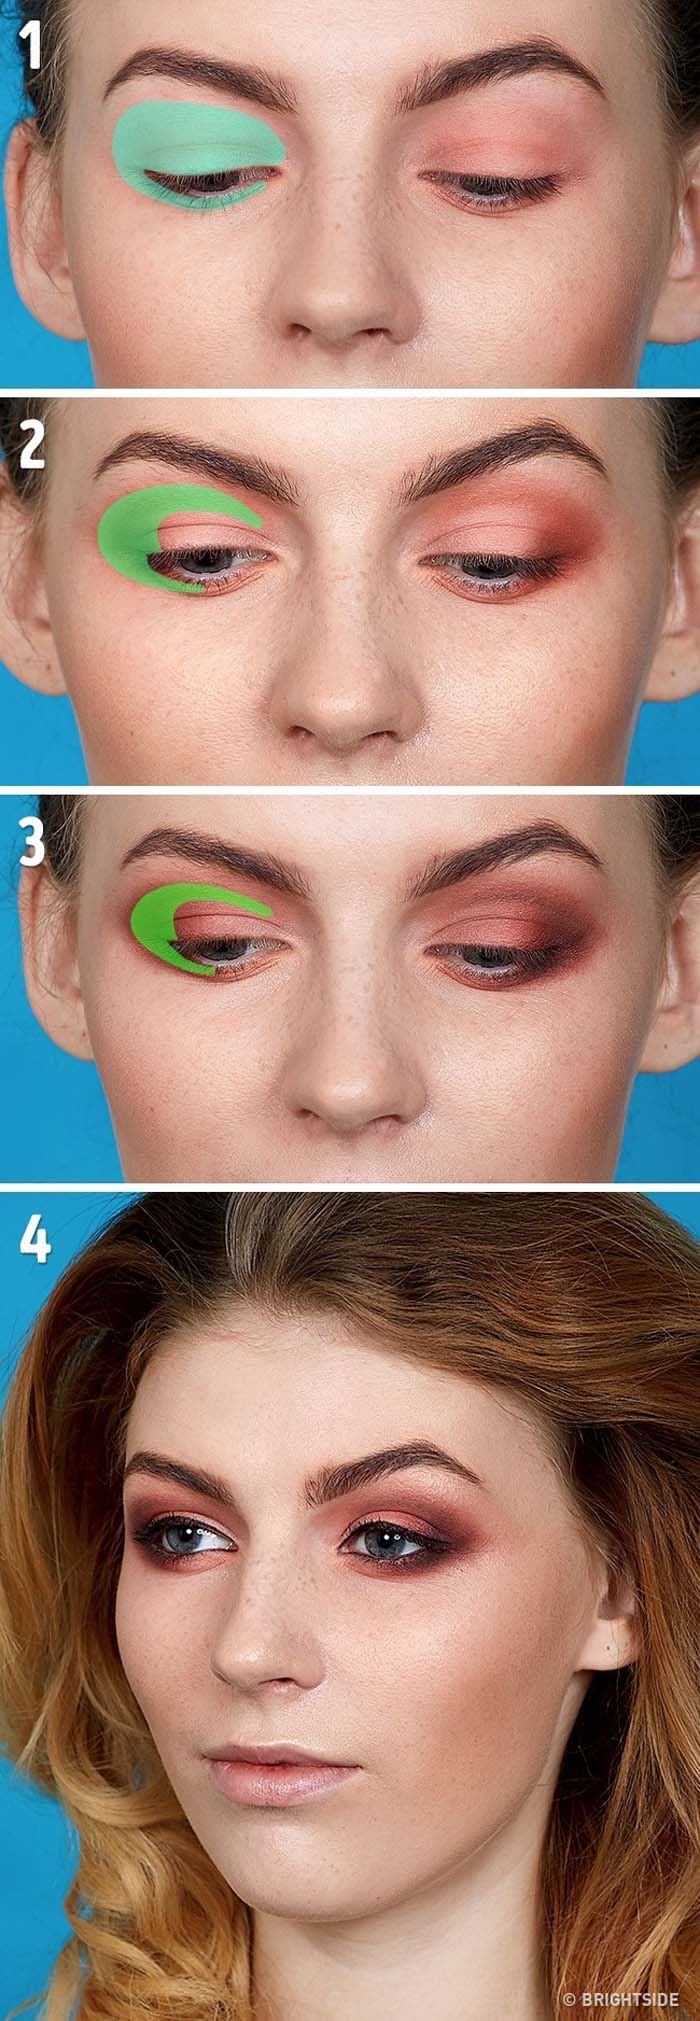 Βασικές τεχνικές στο μακιγιάζ που κάθε γυναίκα πρέπει να γνωρίζει (4)